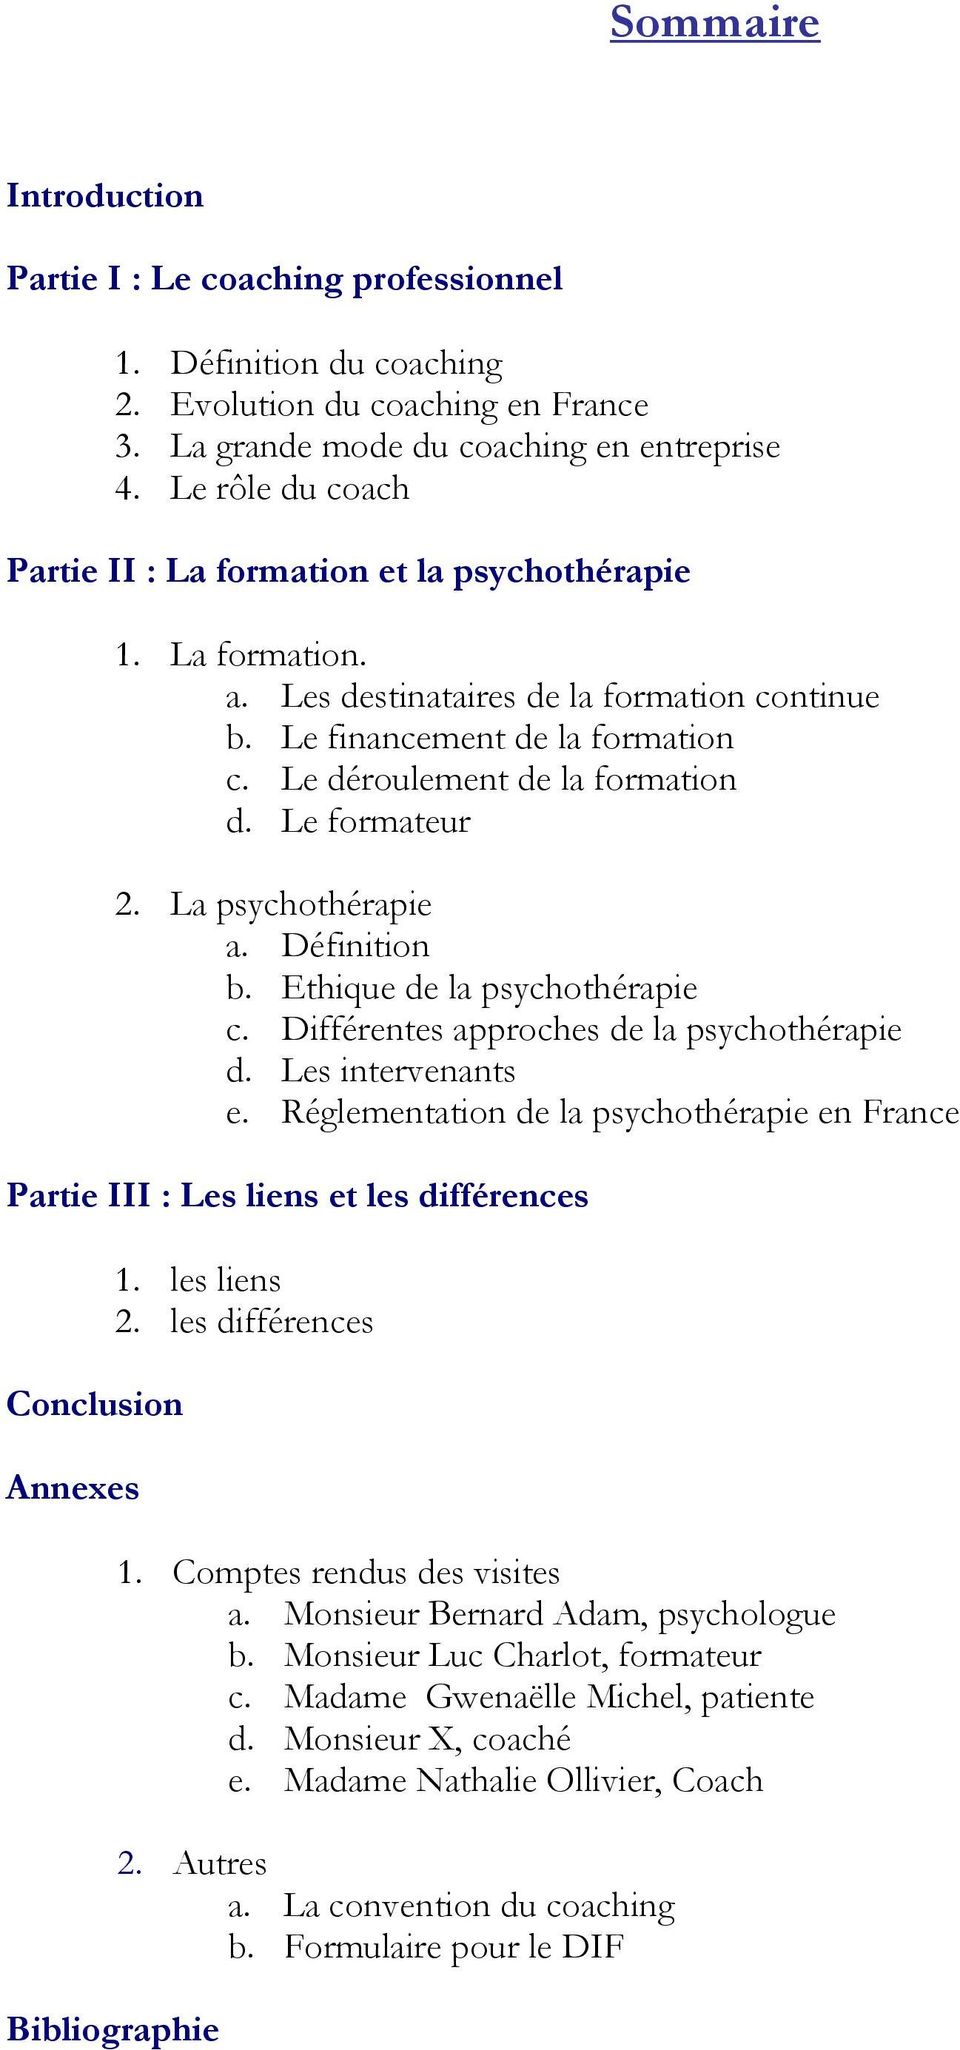 Le formateur 2. La psychothérapie a. Définition b. Ethique de la psychothérapie c. Différentes approches de la psychothérapie d. Les intervenants e.